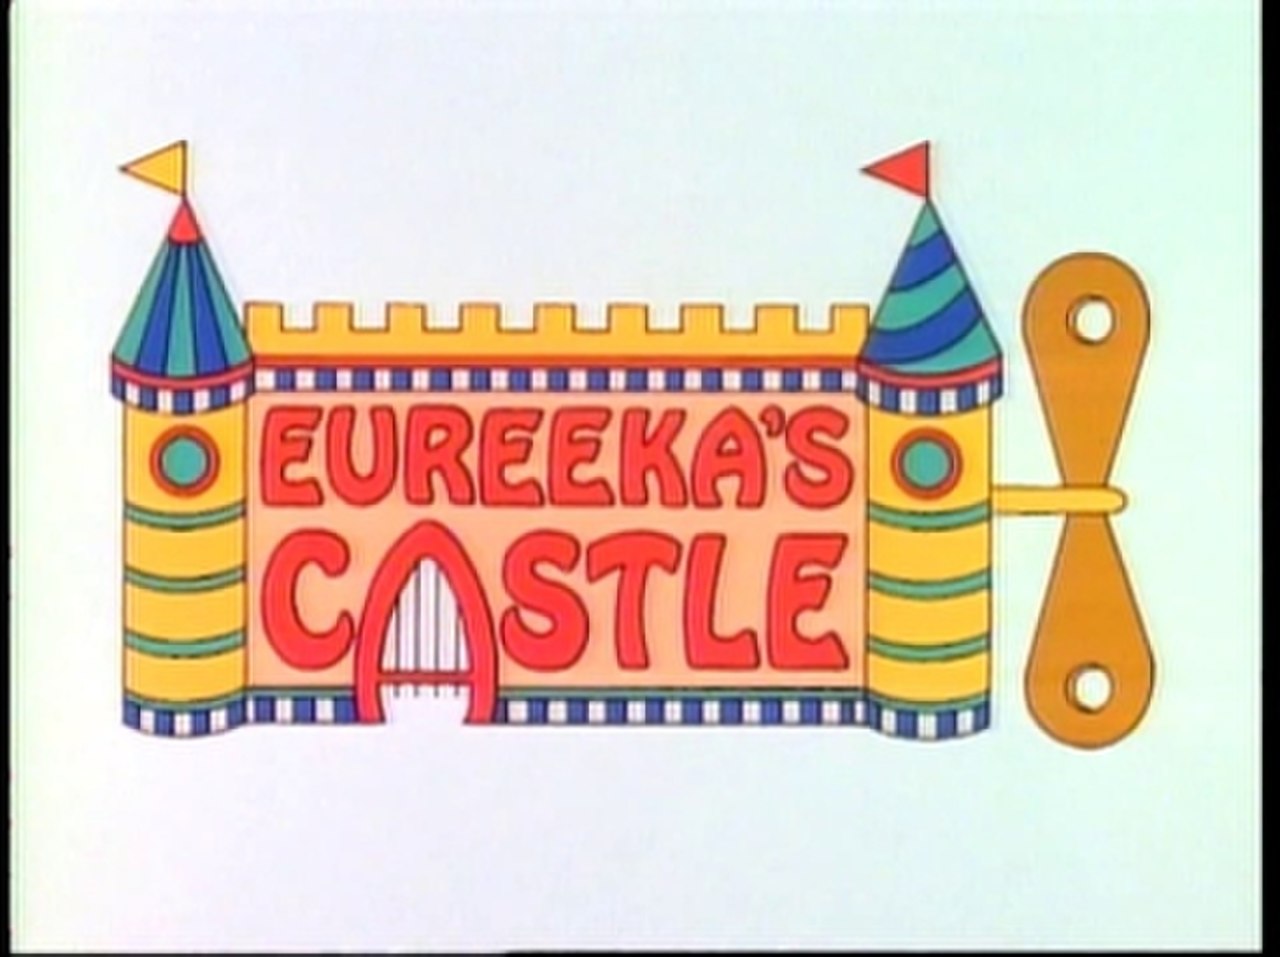 Eureeka's castle intro